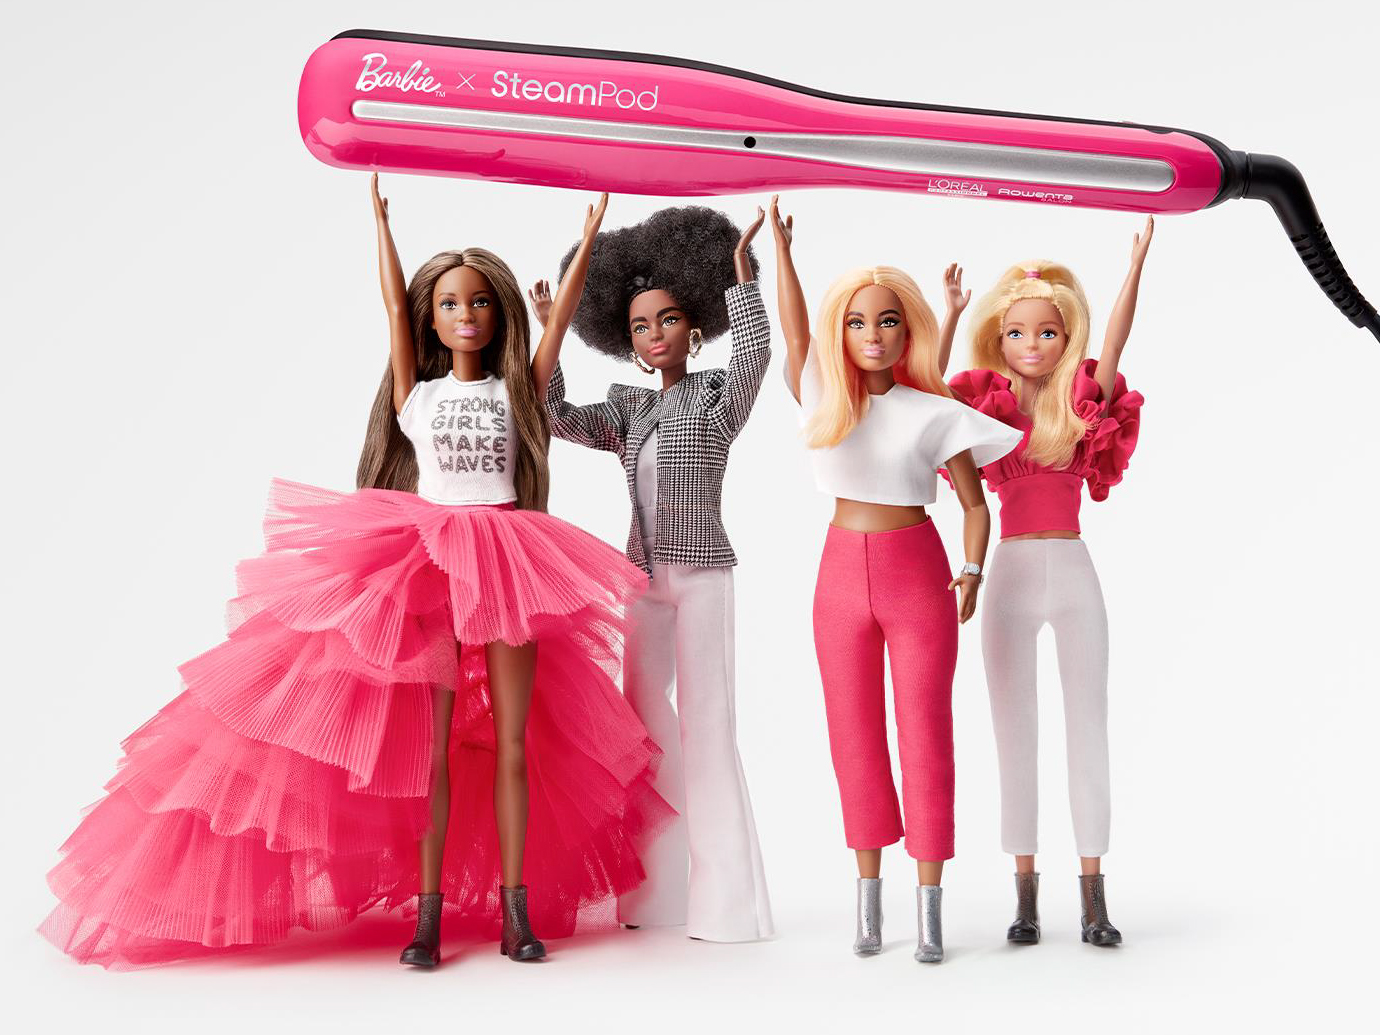 Nuevo objeto de deseo: la edición limitada de Barbie x Steampod que llega a España